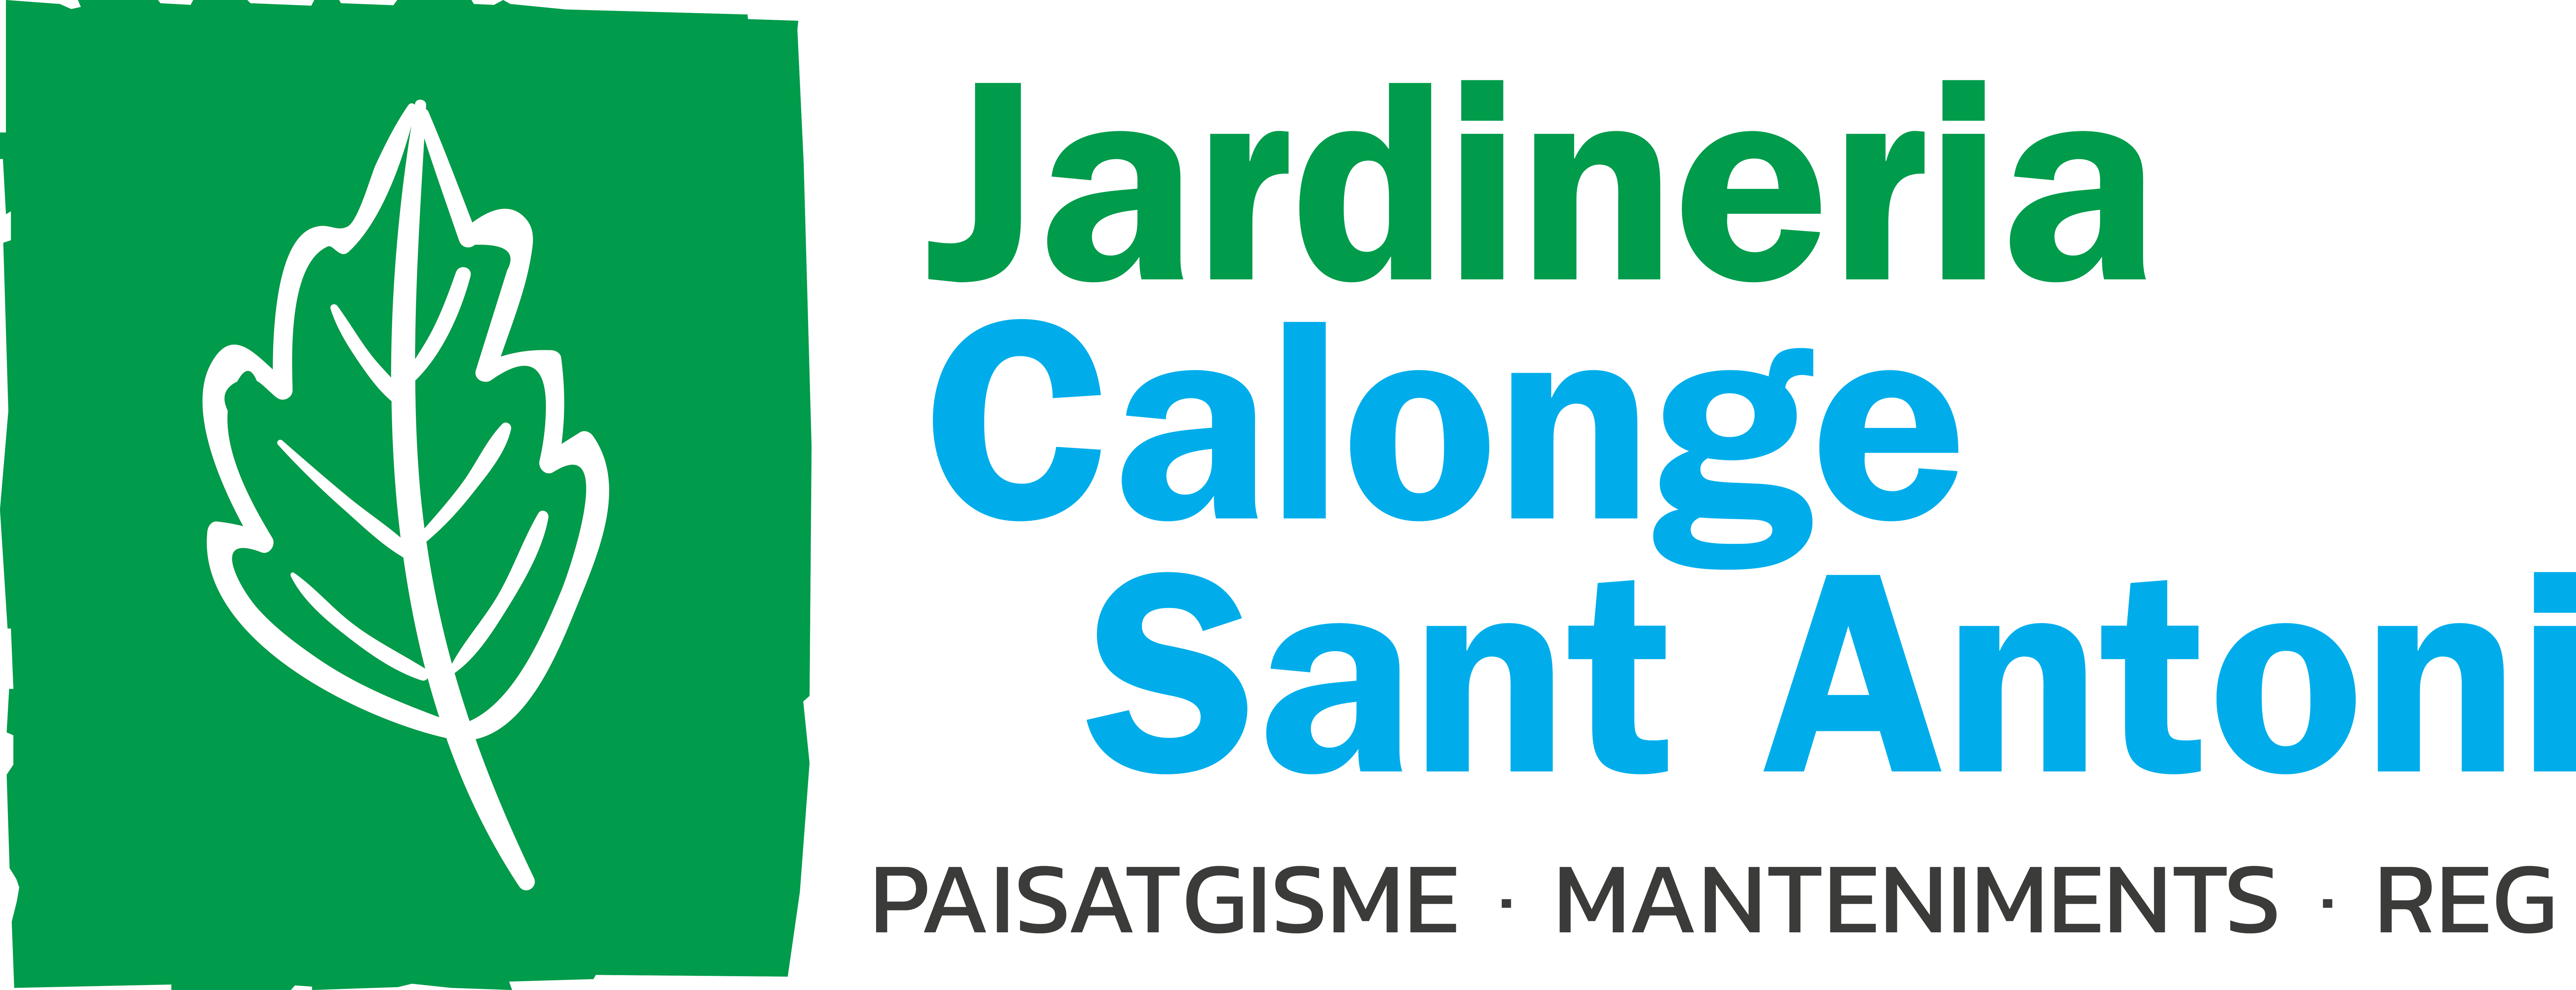 Jardinería Calonge Sant Antoni